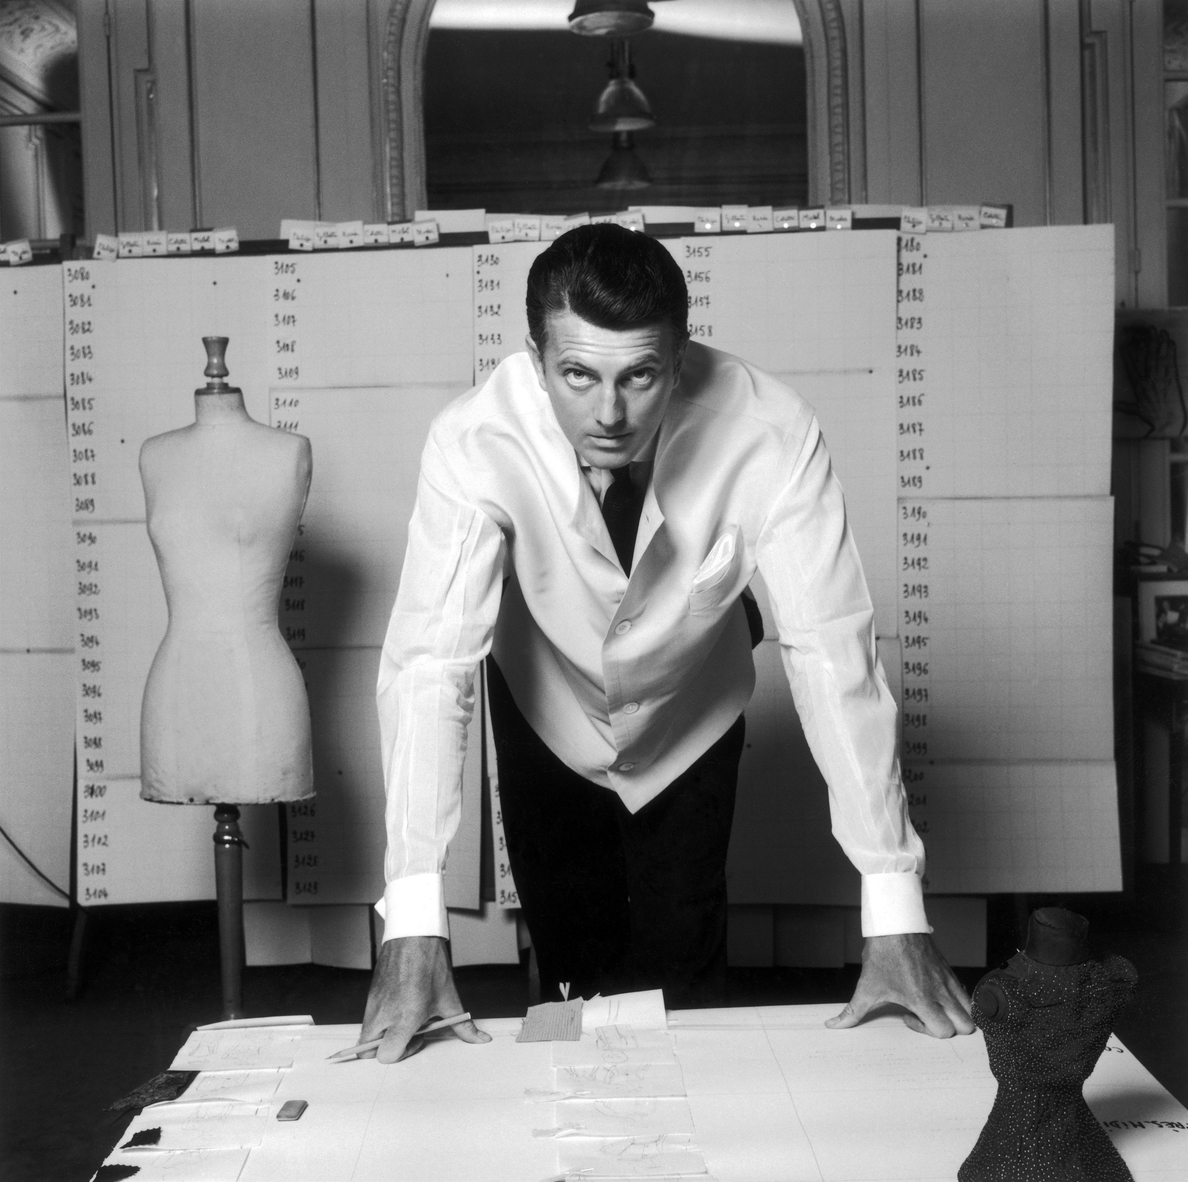 El Thyssen recibe la primera gran retrospectiva del diseñador Givenchy